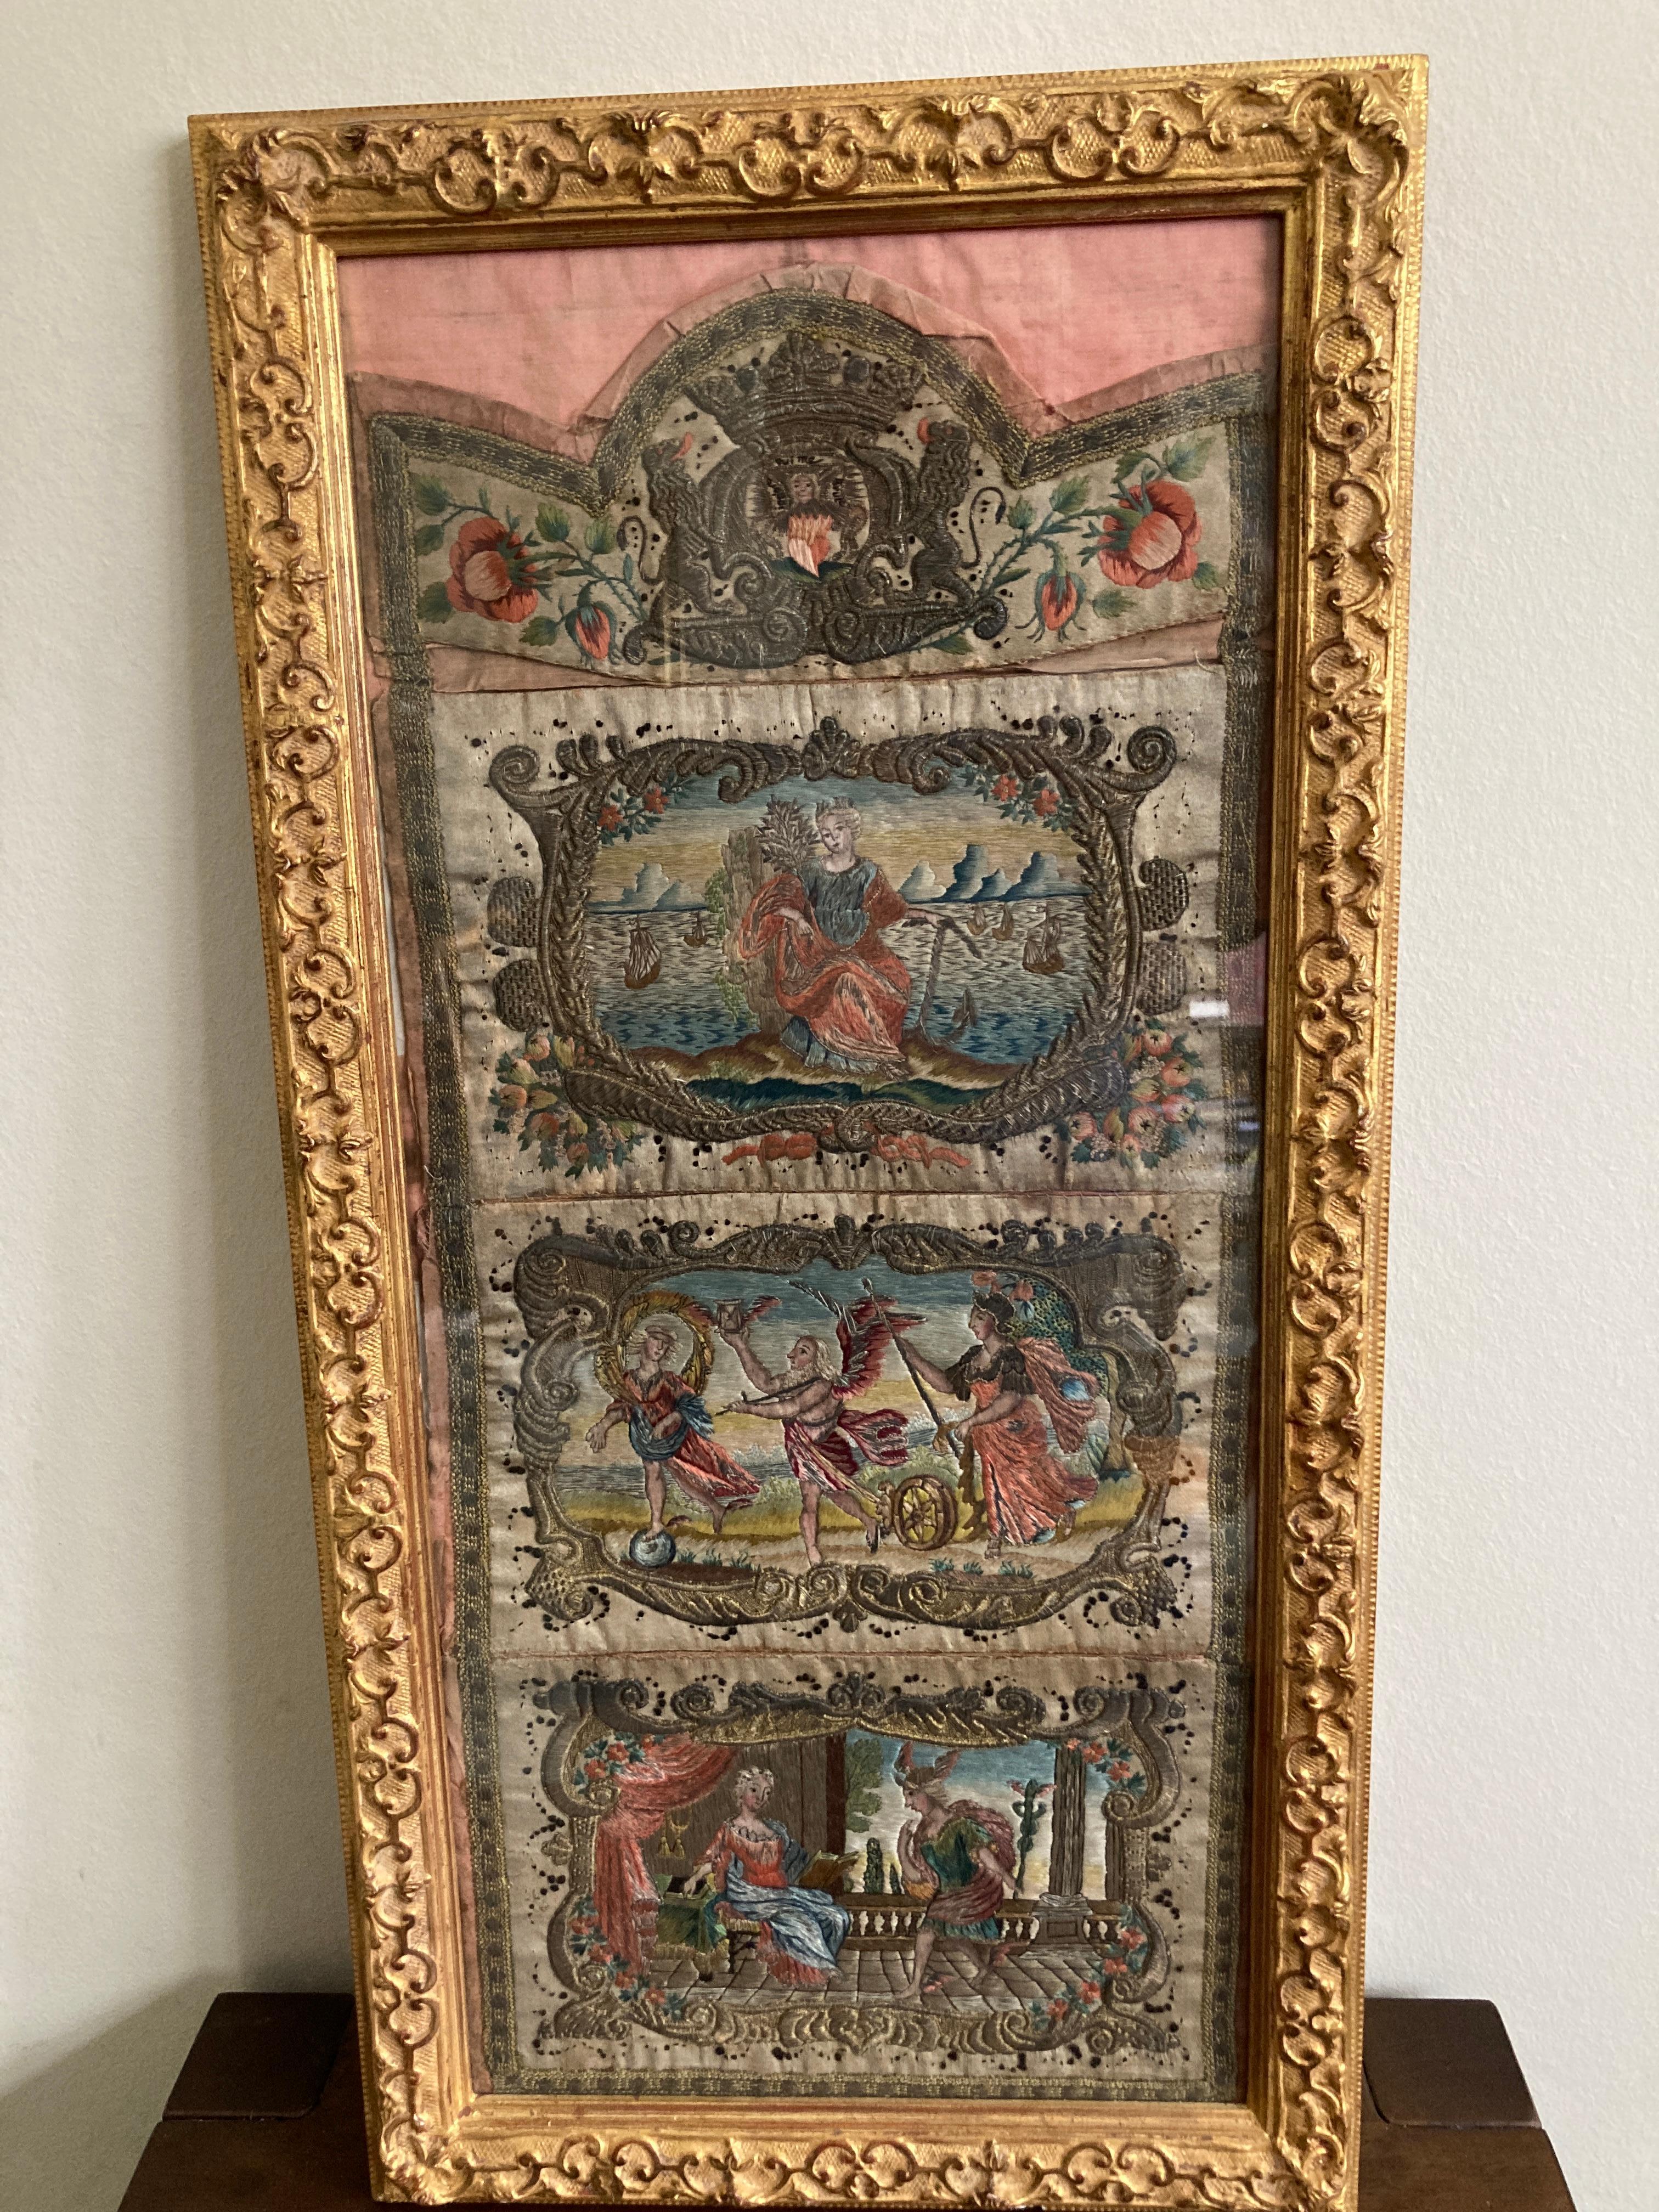 Une broderie ancienne en soie et en fil de métal.

Trois vignettes figuratives du XVIIIe siècle surmontées d'une armoirie, le tout dans des soies colorées et avec des bordures en fil de métal. Les volutes C et S en fil de métal, un peu lourdes,